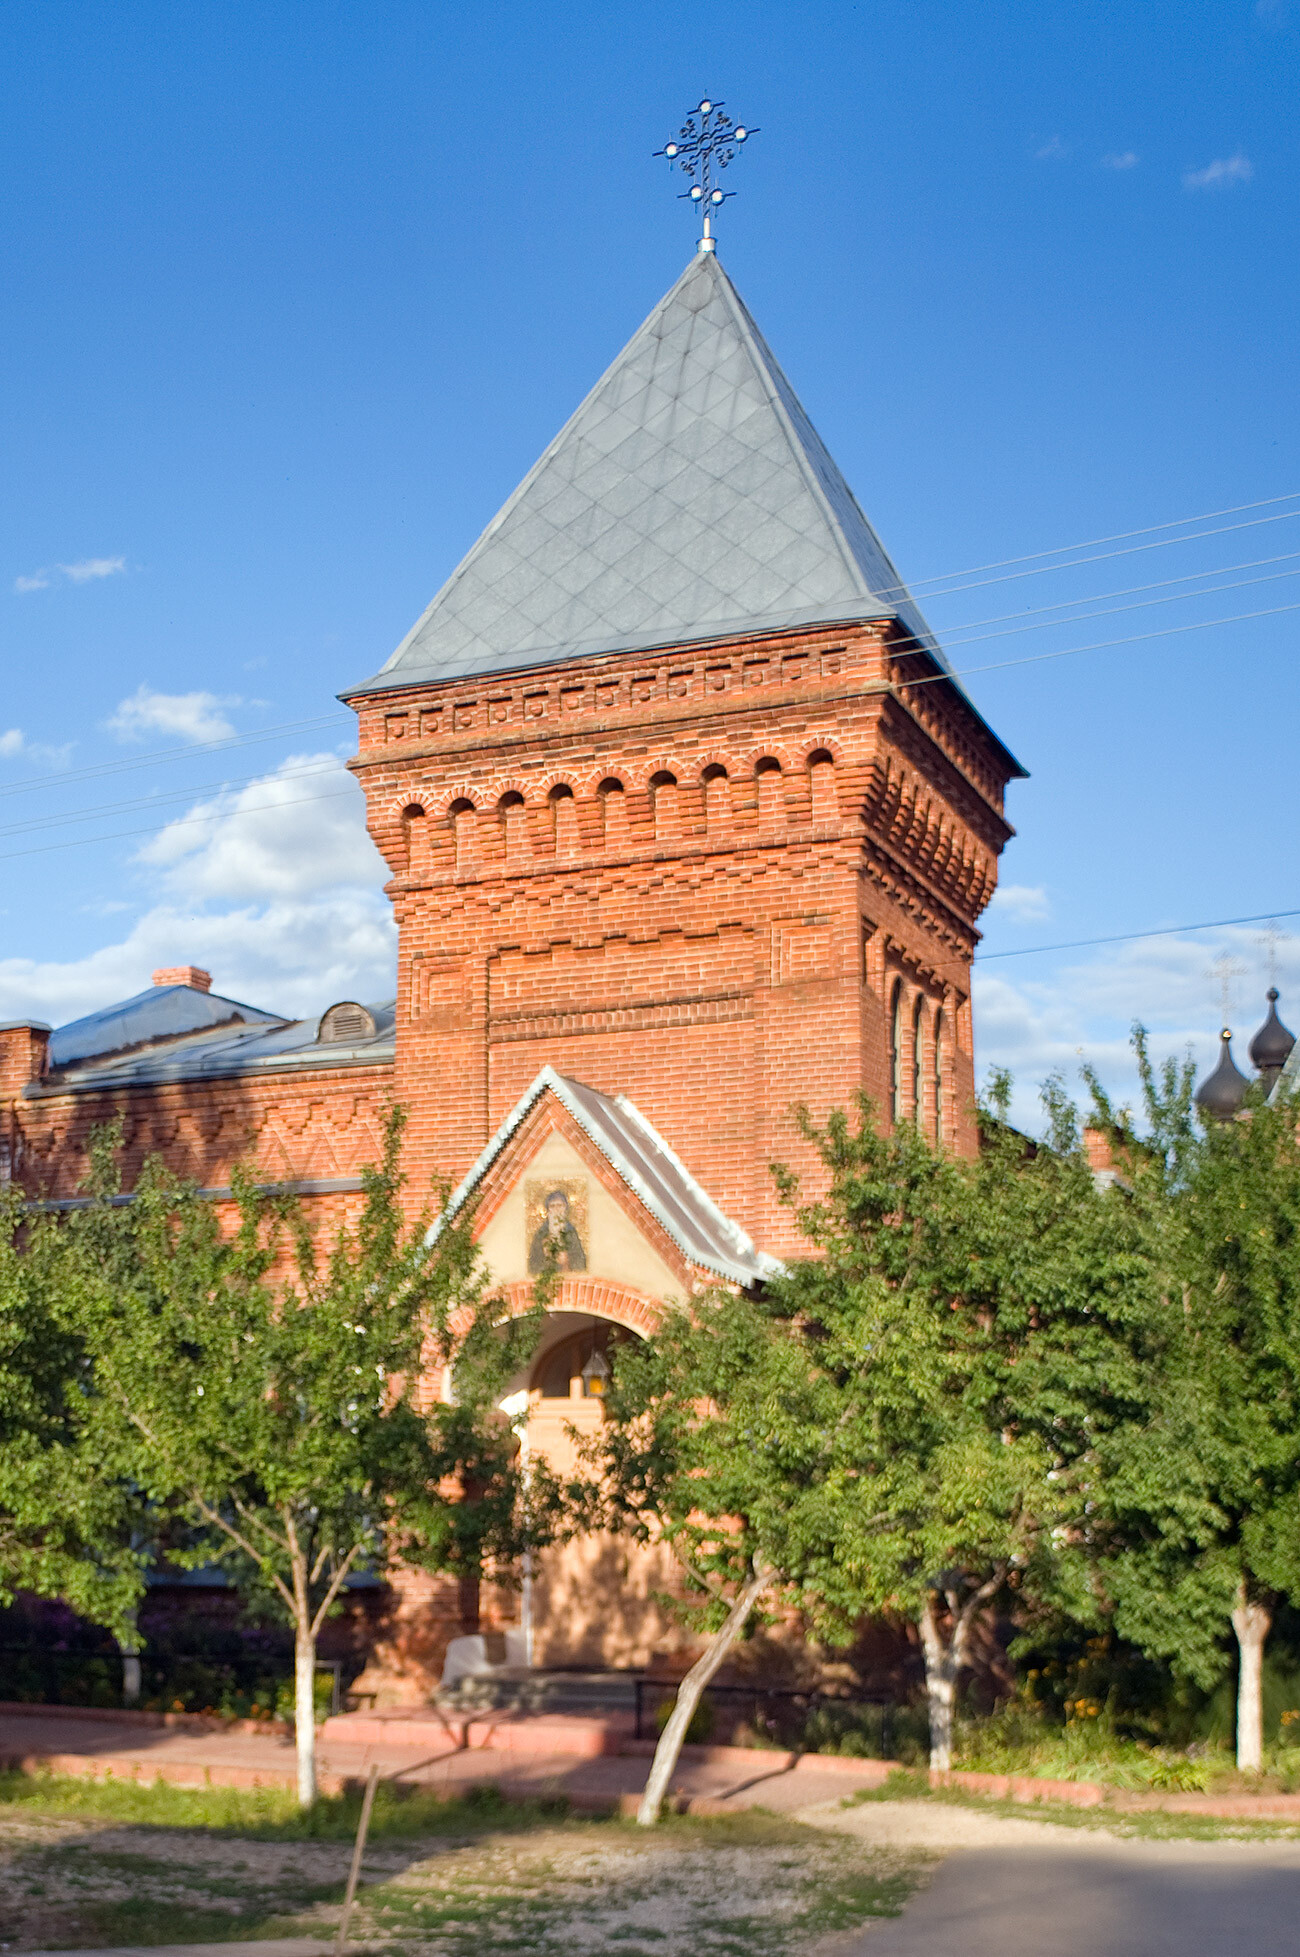 Shamordino. Convento dell'Icona di Kazan-S. Ambrogio, agosto 2014
